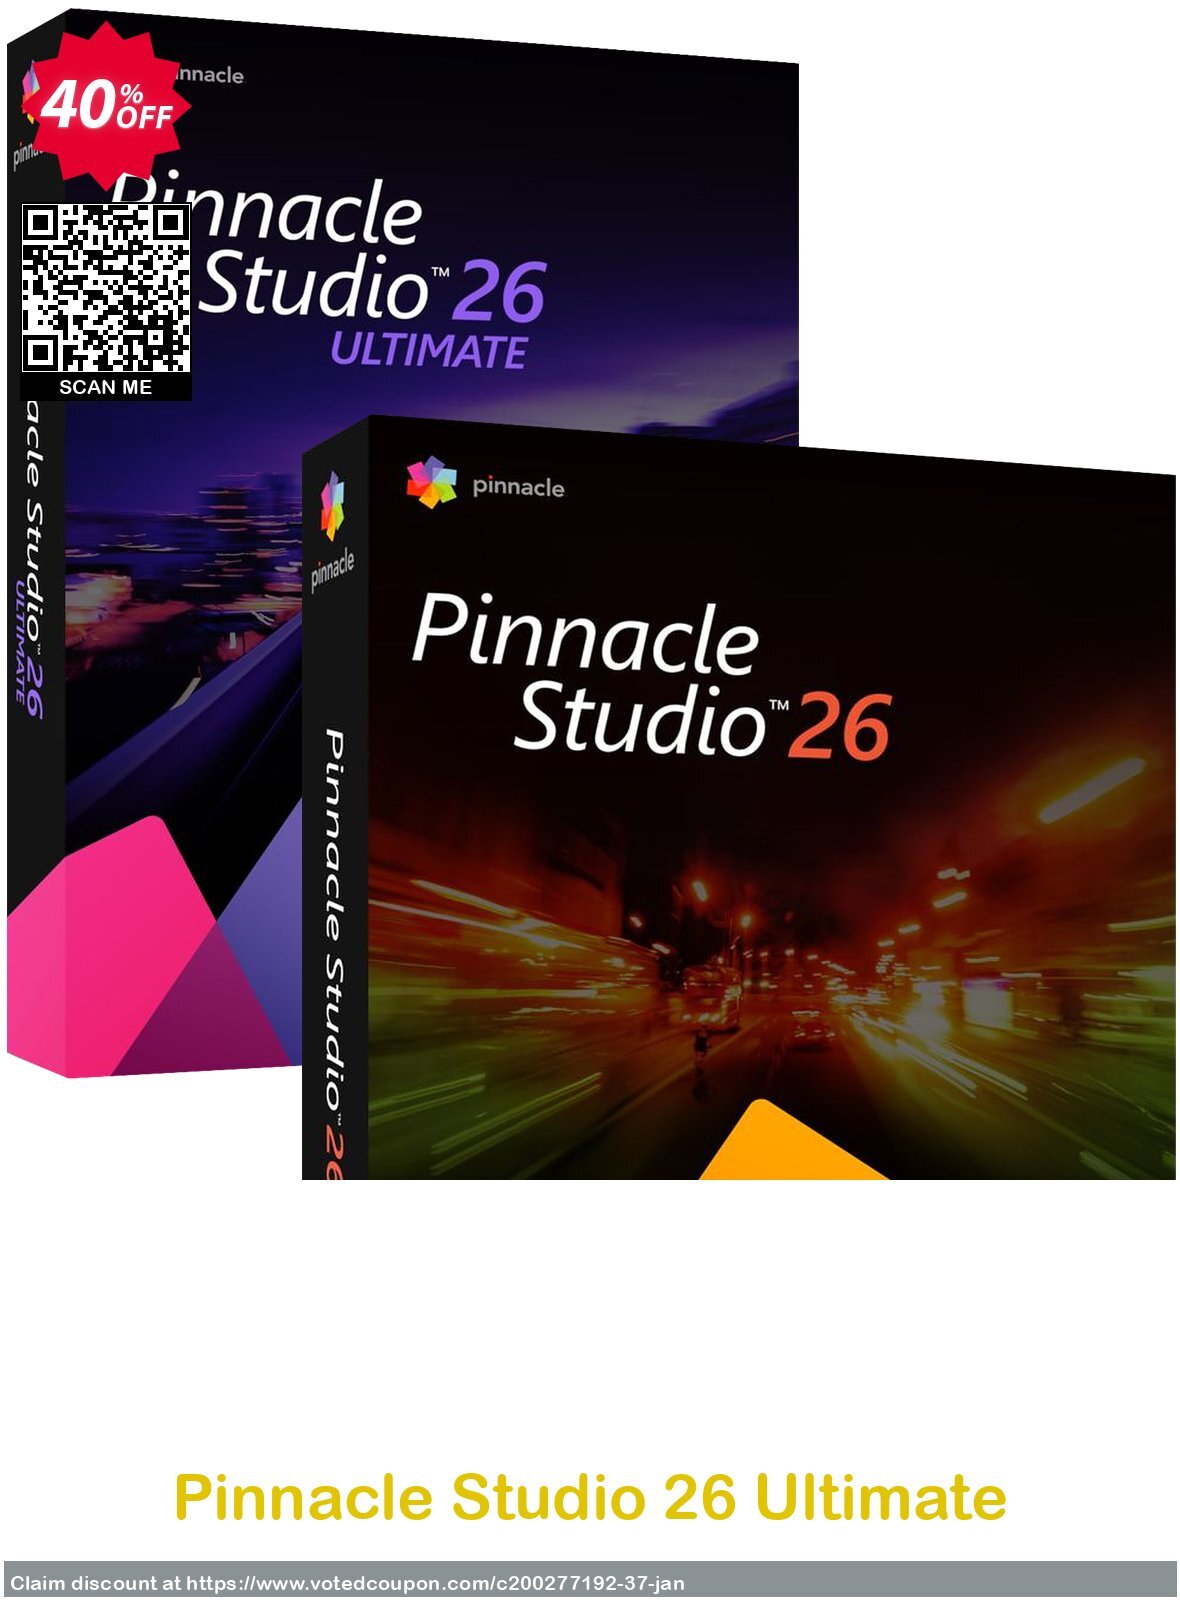 Pinnacle Studio 26 Ultimate Coupon, discount 40% OFF Pinnacle Studio 26 Ultimate, verified. Promotion: Awesome deals code of Pinnacle Studio 26 Ultimate, tested & approved